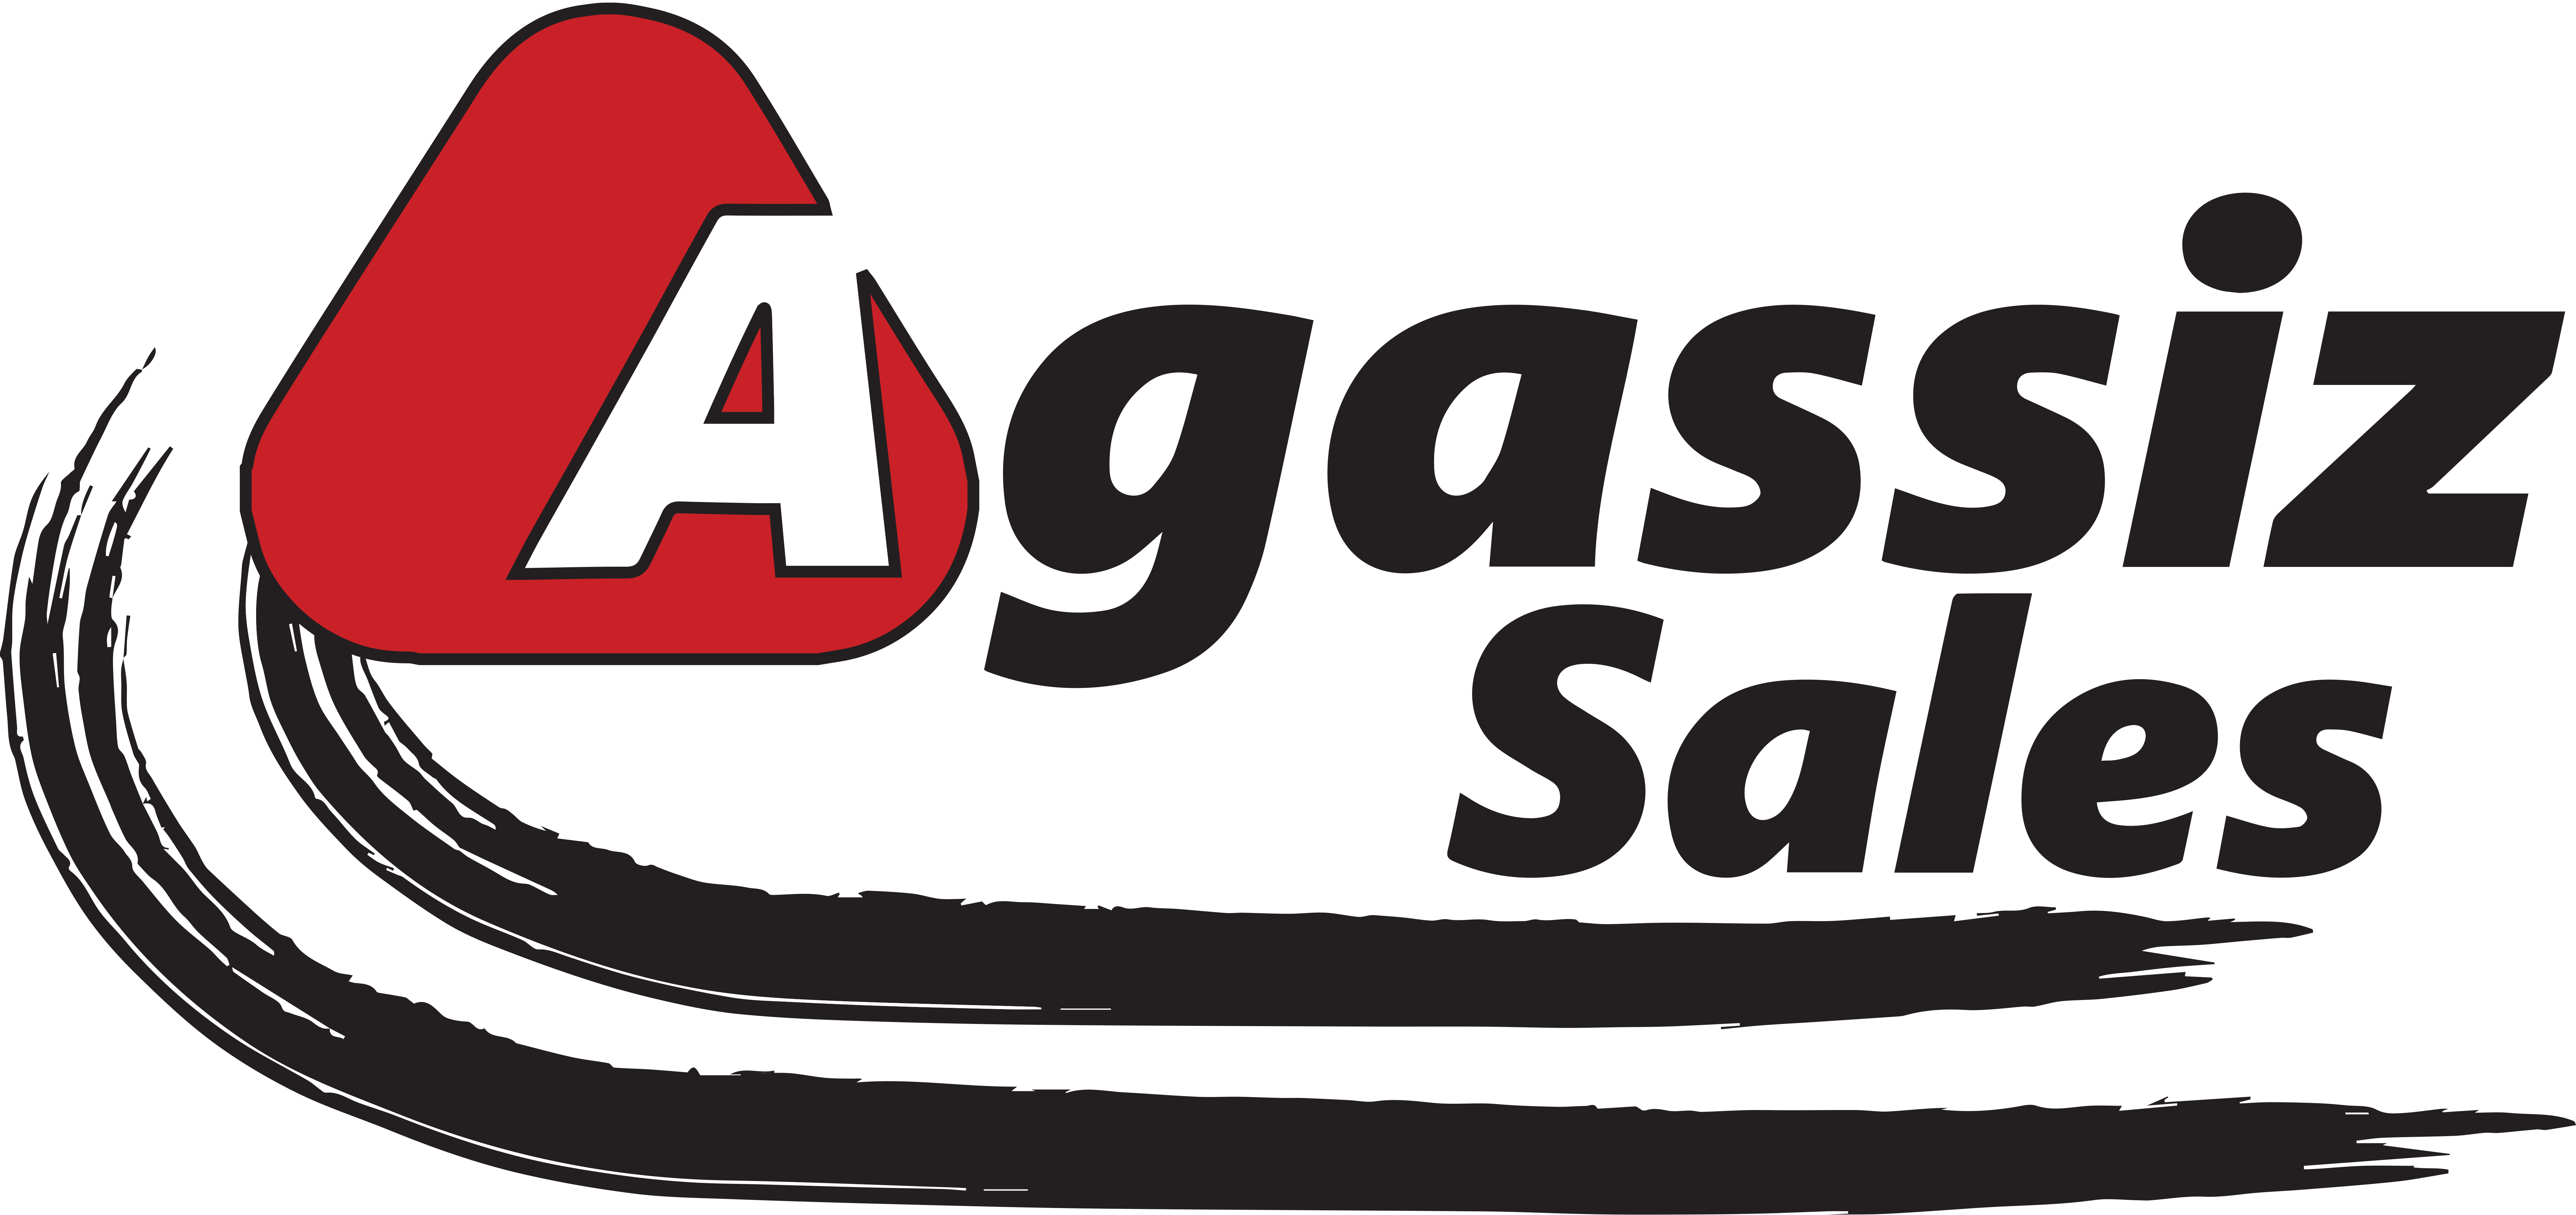 Agassiz Sales Vector.png